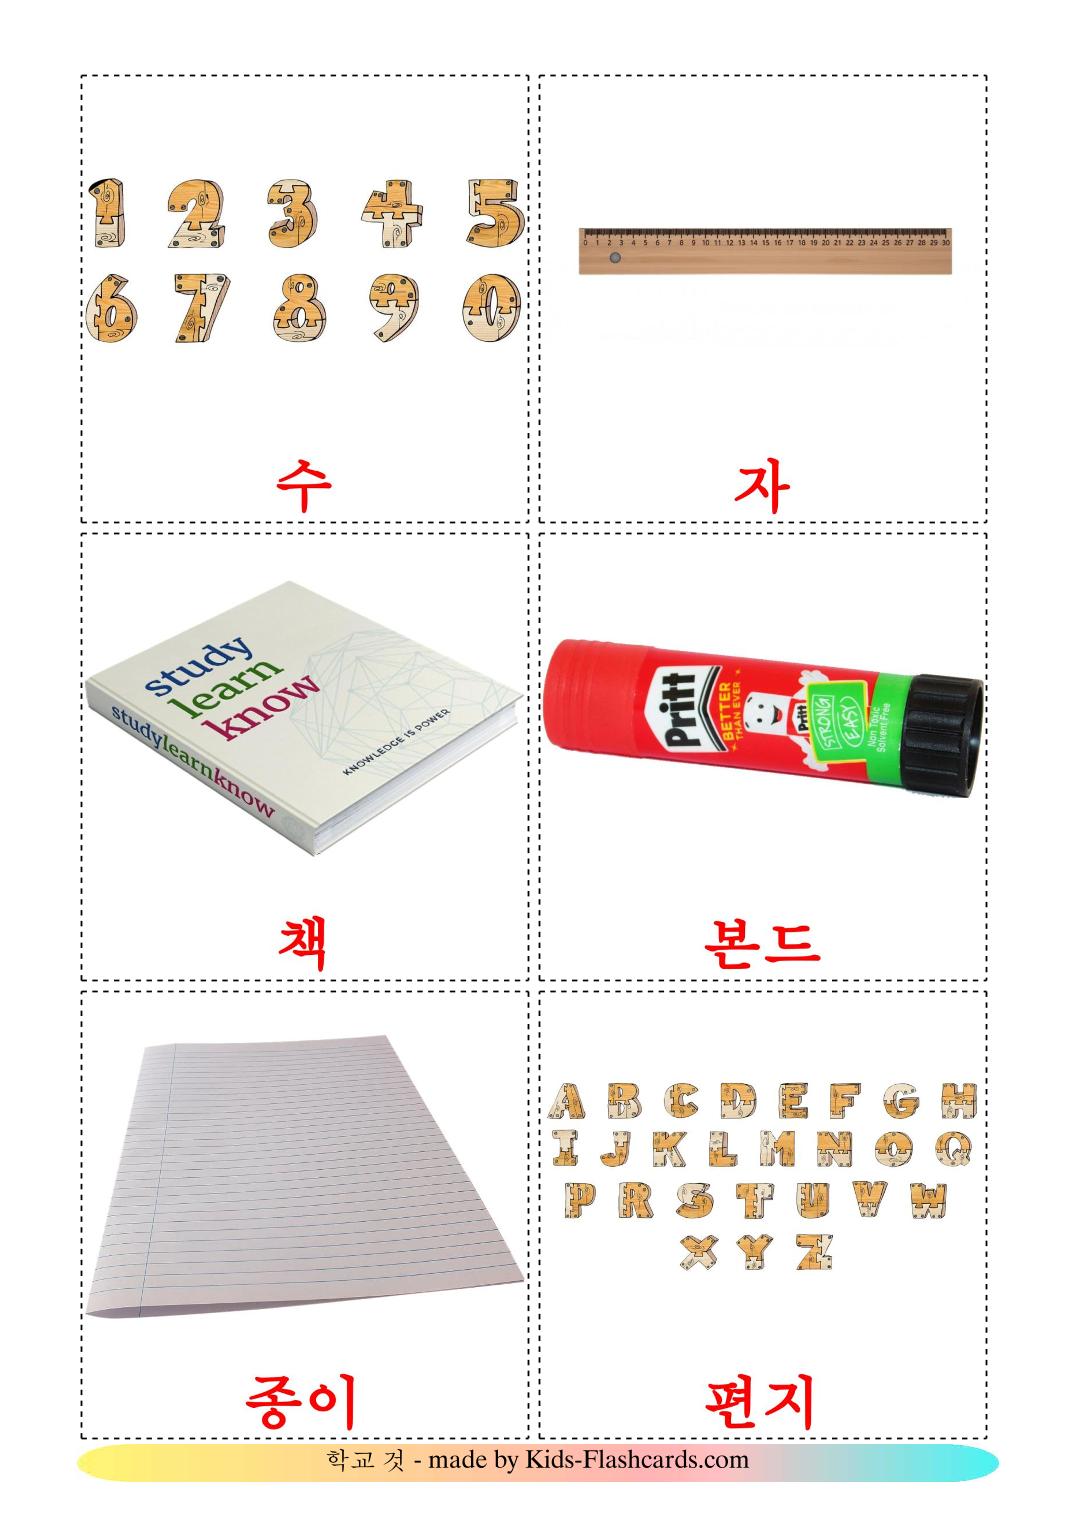 Objets de la classe - 36 Flashcards coréen imprimables gratuitement